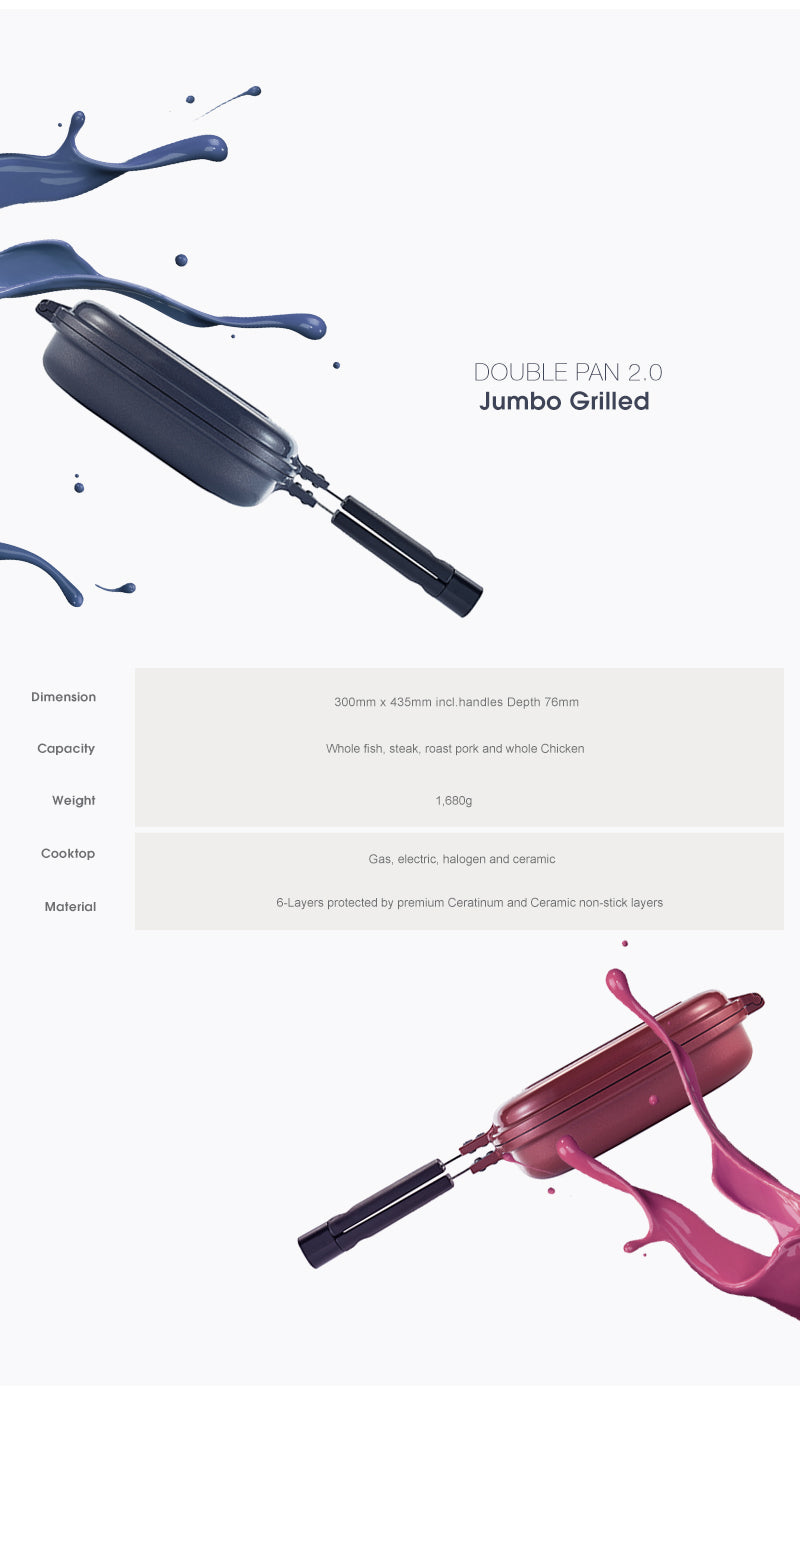 Happycall Double Pan 2.0 (Detachable) Jumbo Grill - Pink